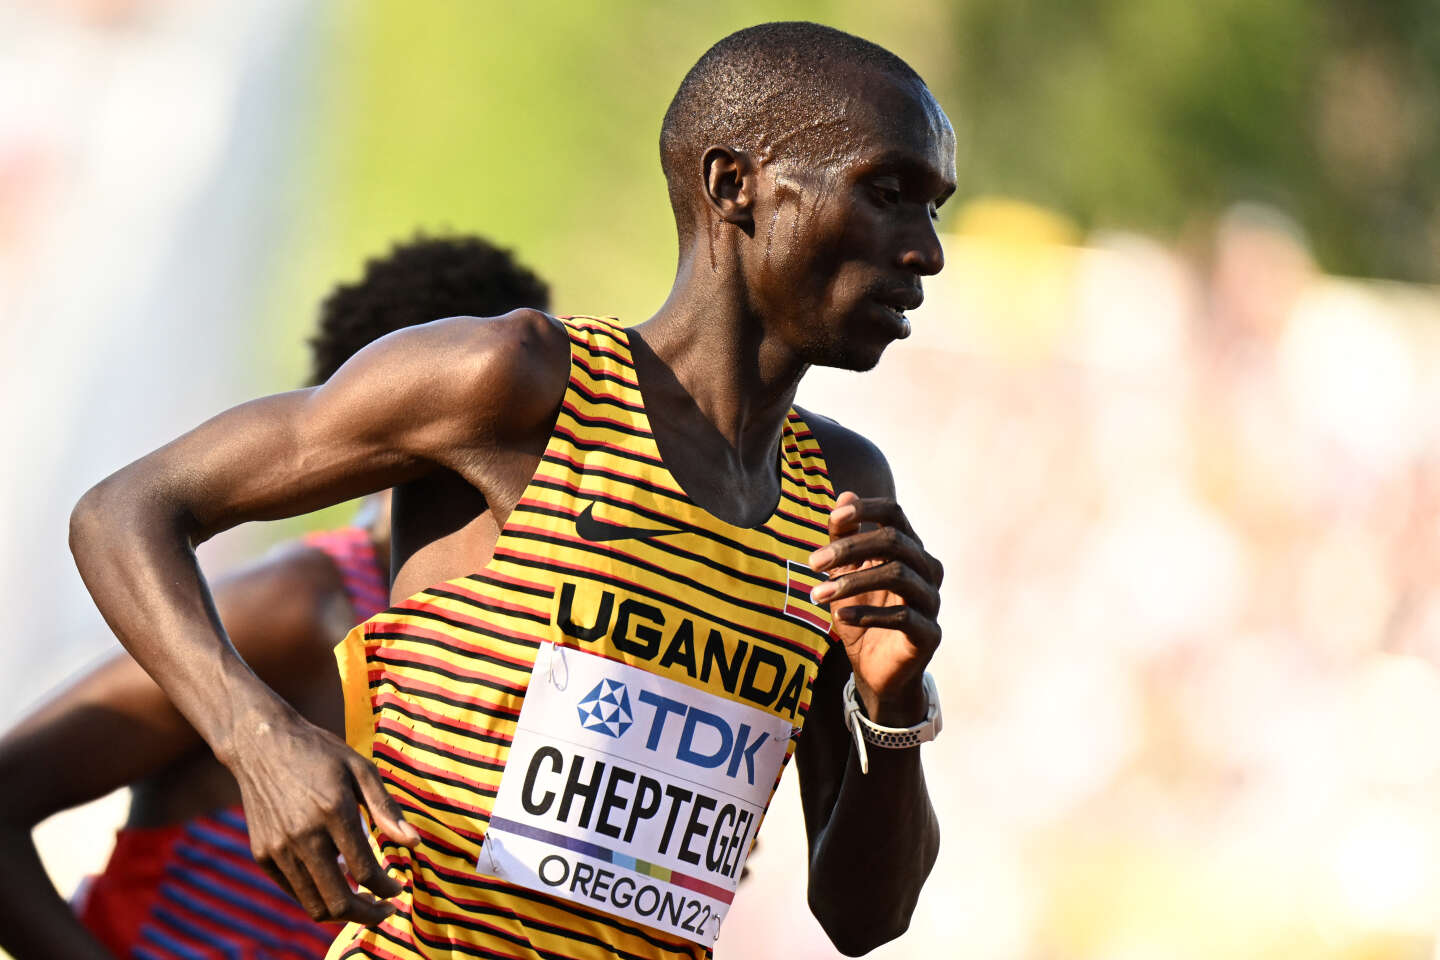 Athlétisme : l’Ouganda mise sur la région du mont Elgon pour rivaliser avec le Kenya et l’Ethiopie